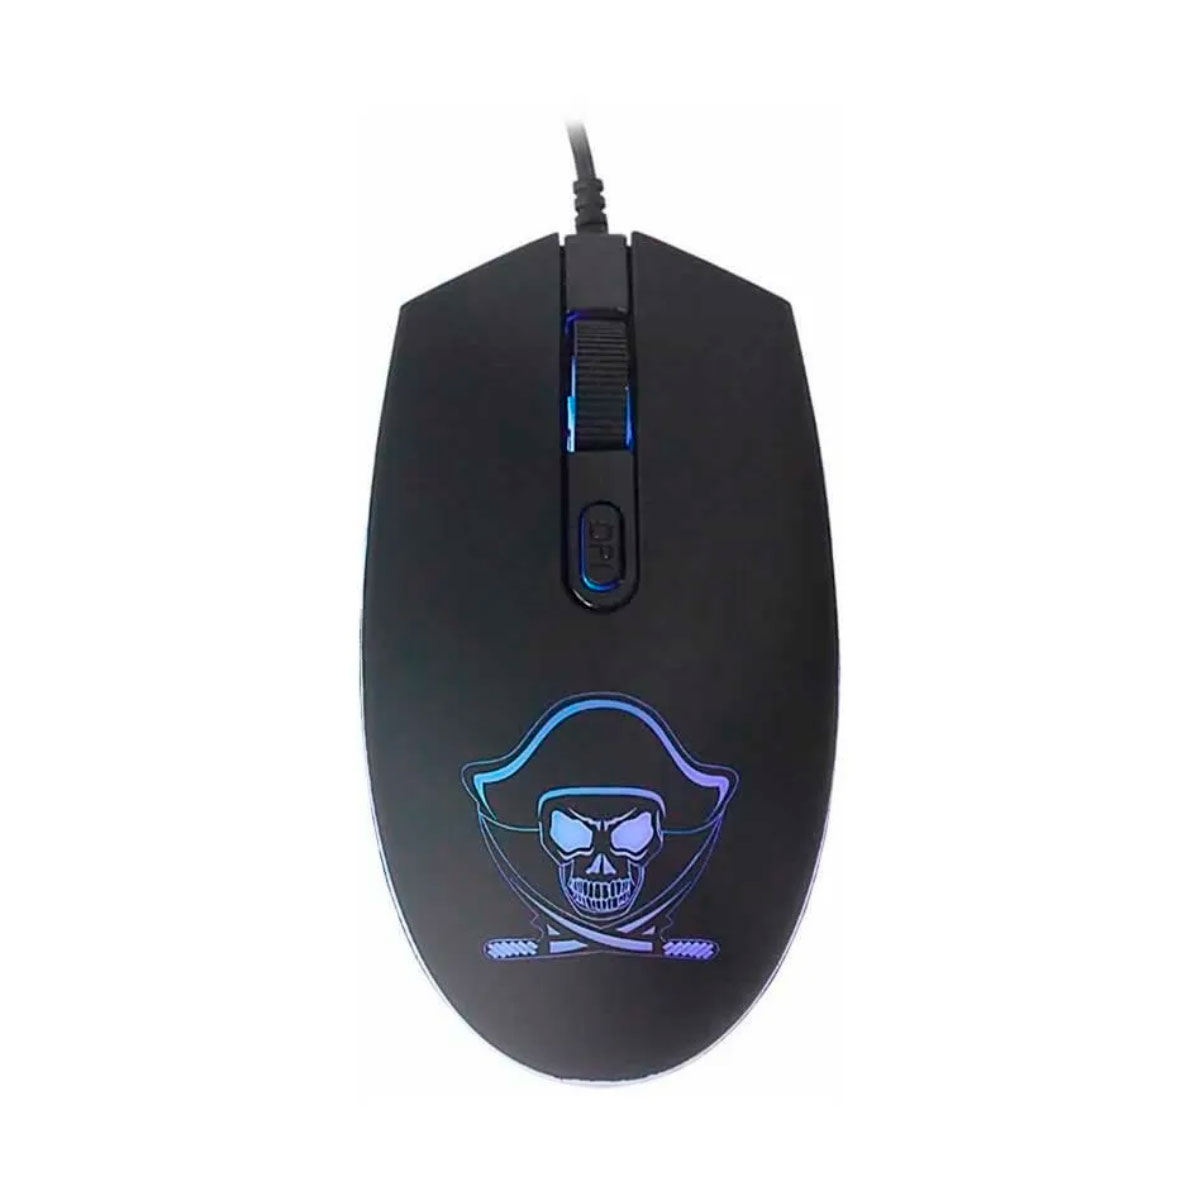 Mouse Gamer K-Mex Pirata M3400 - 1200dpi - com LED RGB